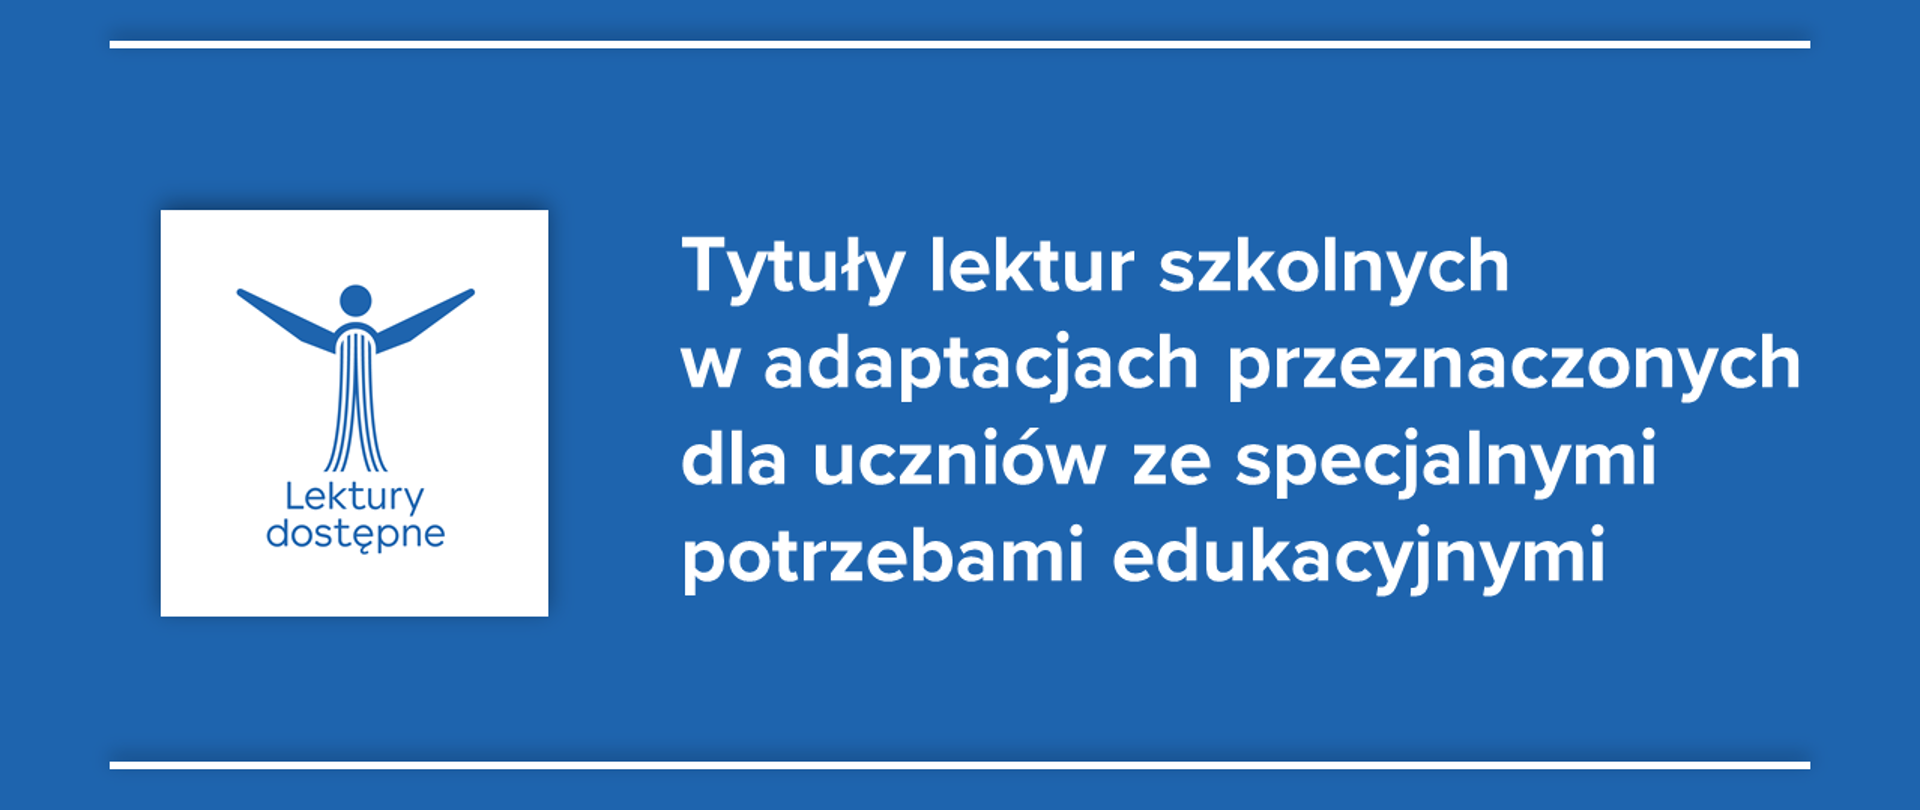 Niebieskie tło z logo "Lektury dostępne" oraz tekstem :"Tytuły lektur szkolnych w adaptacjach przeznaczonych dla uczniów ze specjalnymi potrzebami edukacyjnymi"